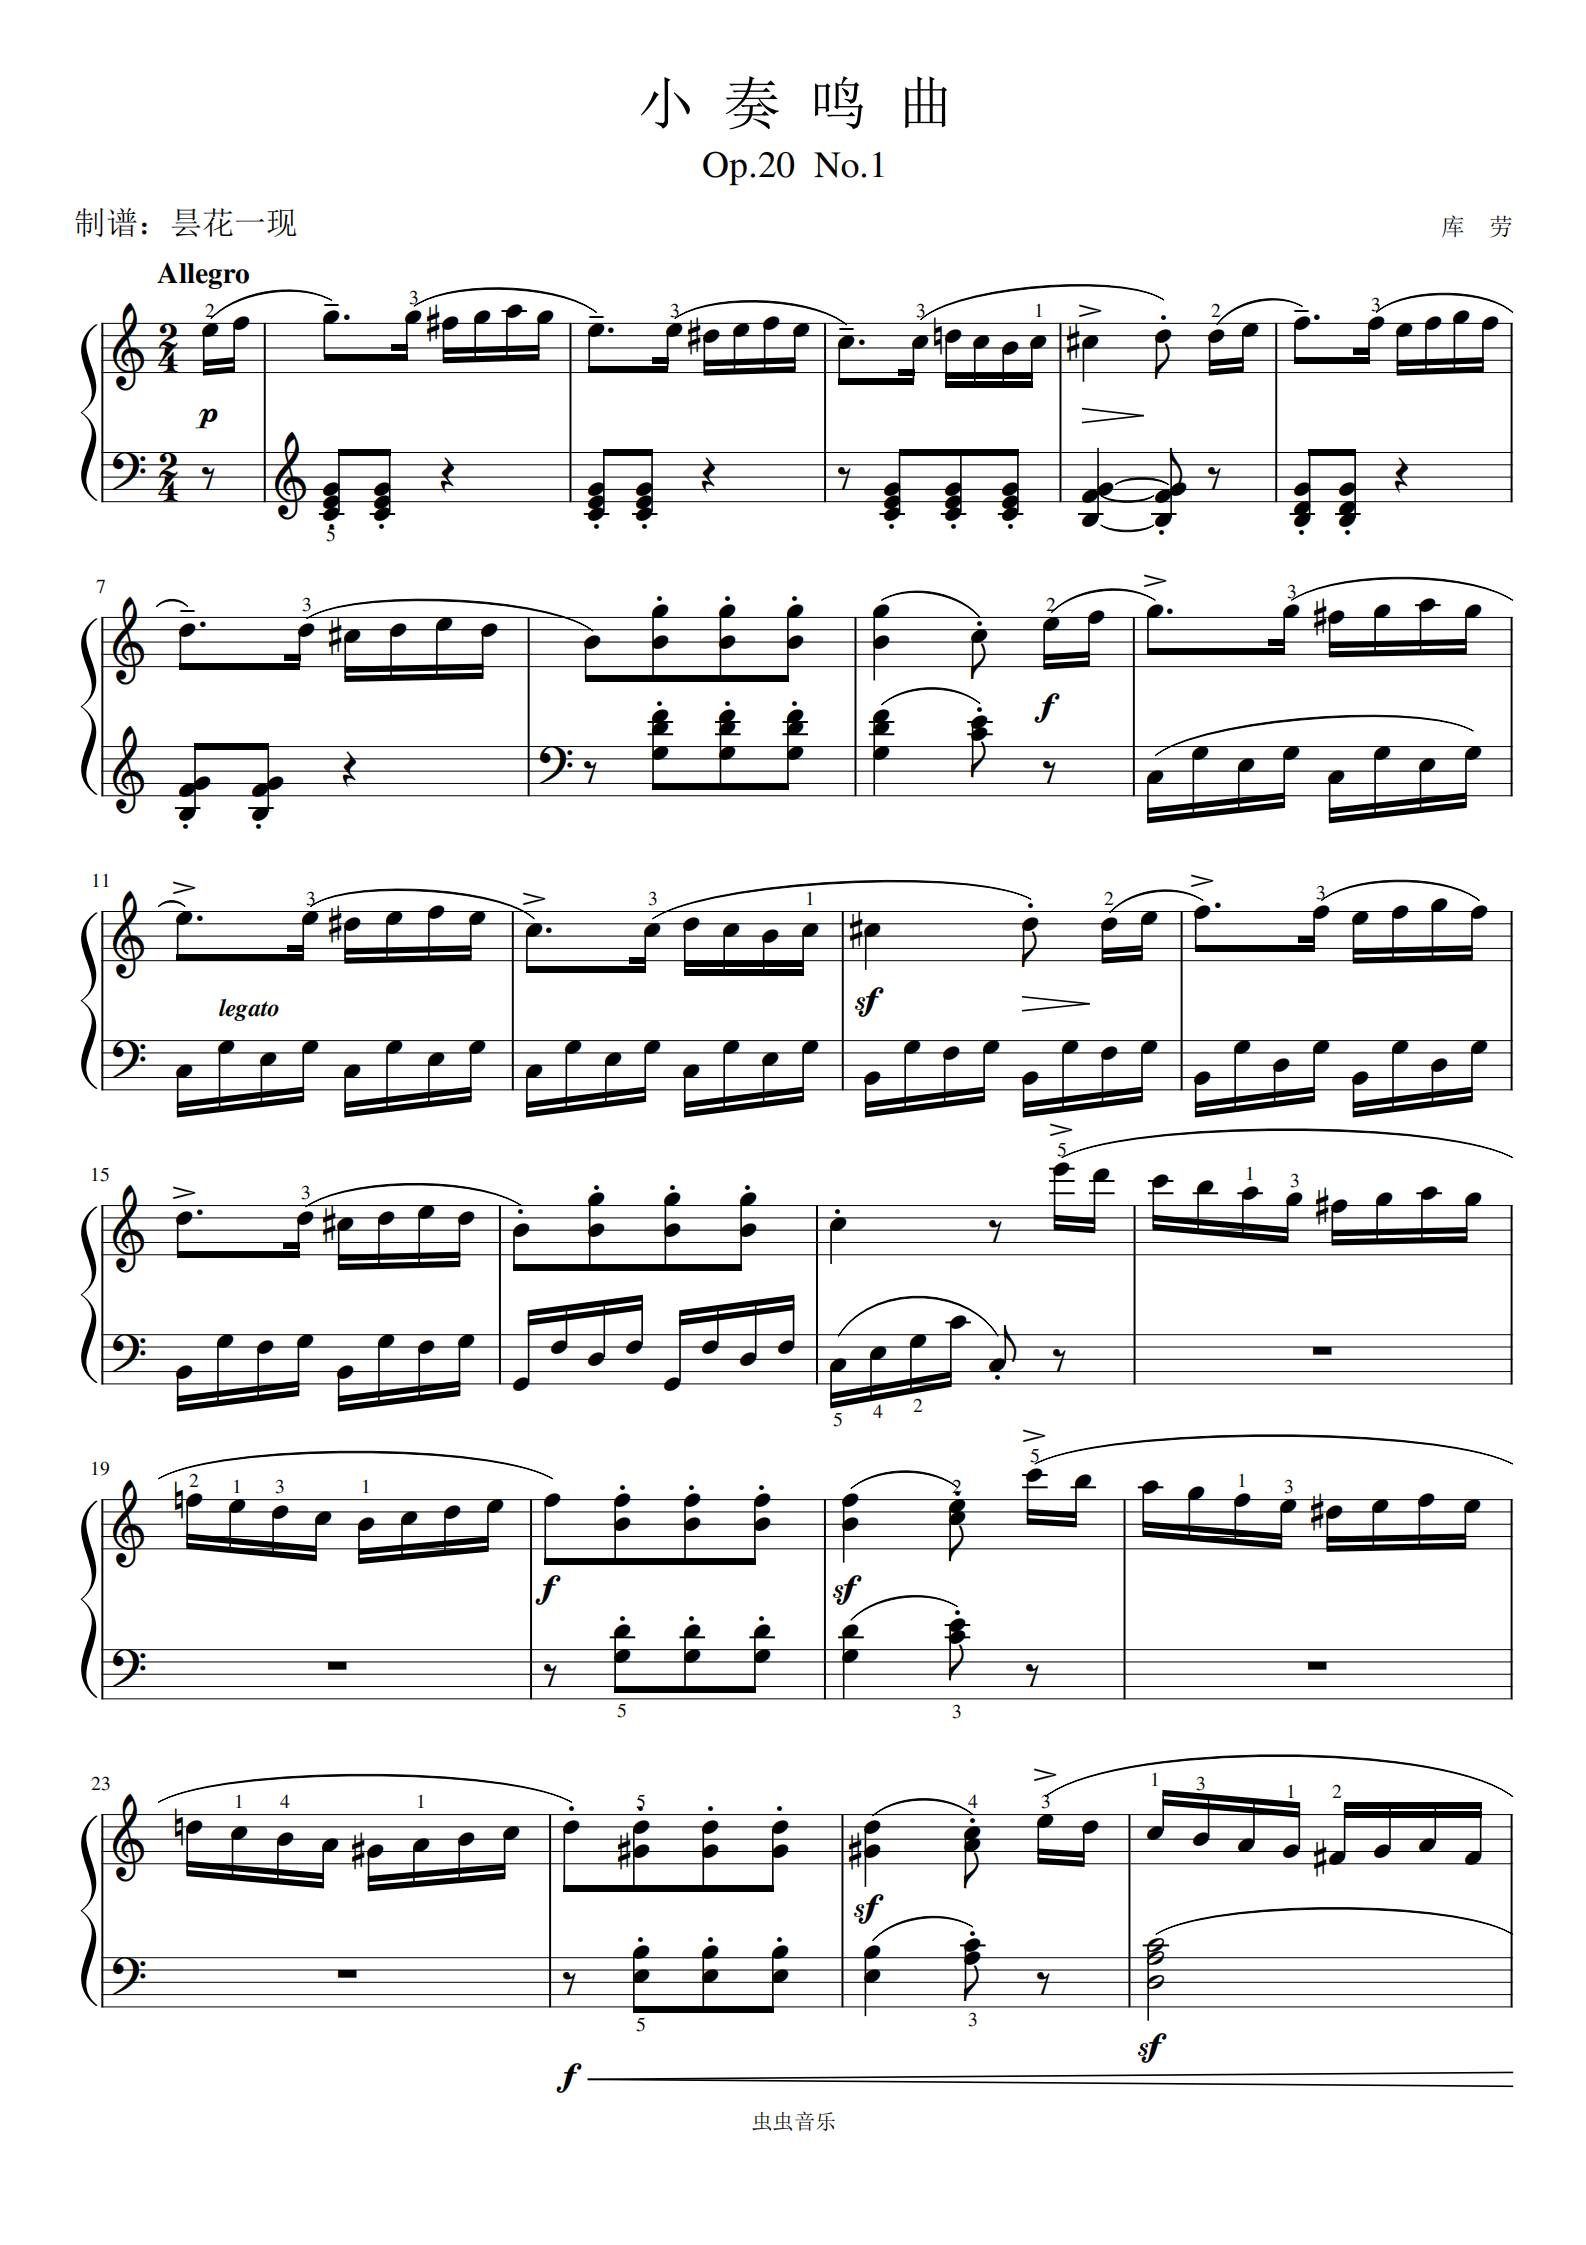 库劳-op.20 no.1-3《小奏鸣曲》